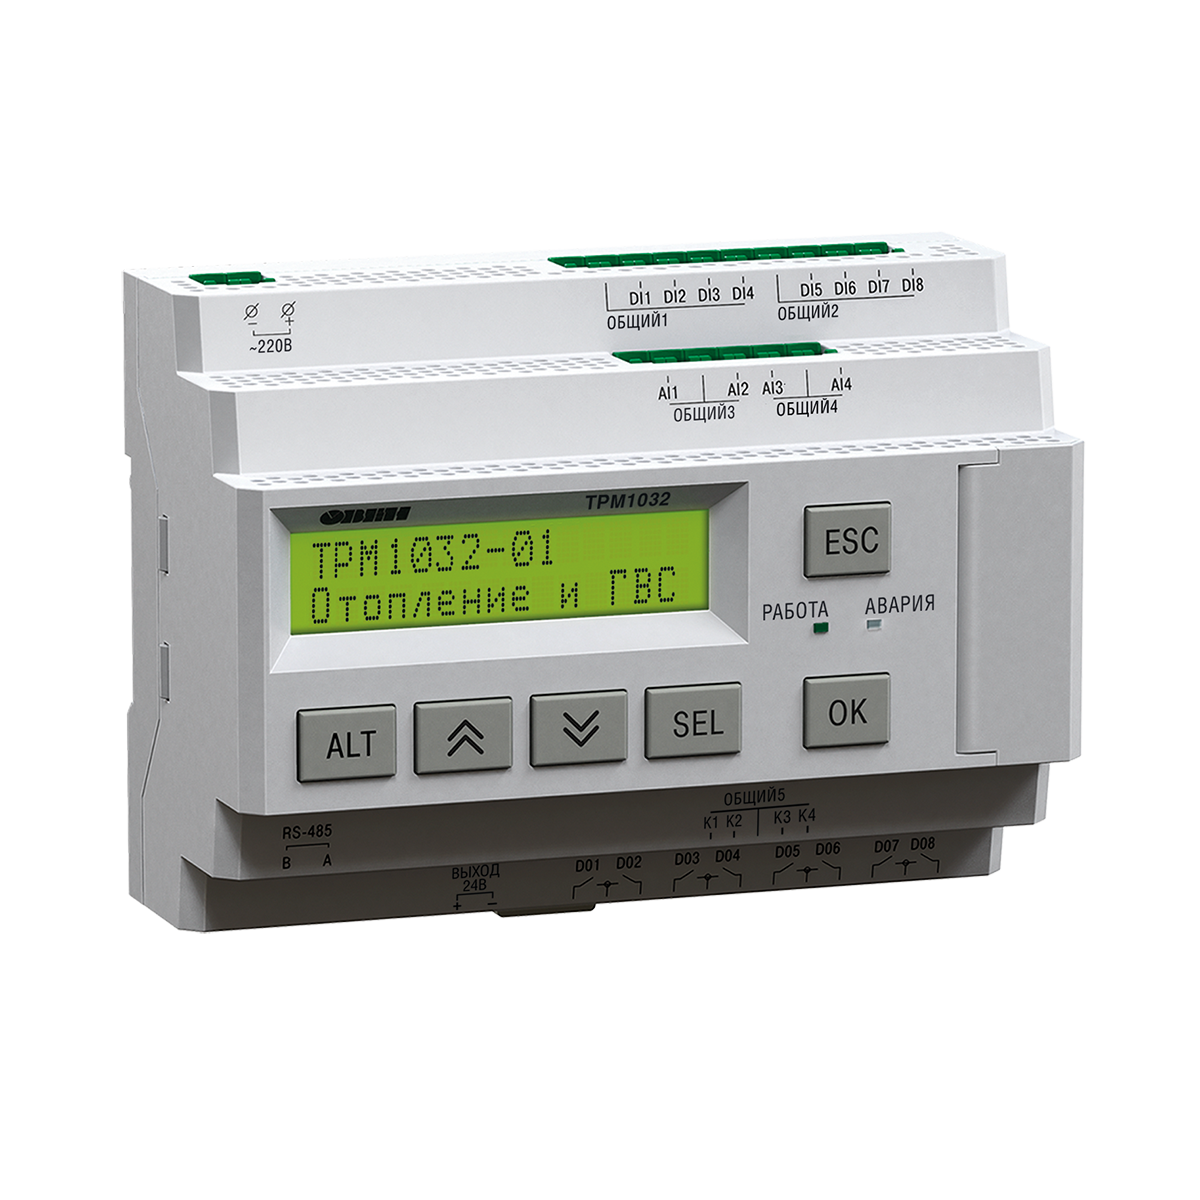 ТРМ1032М-01.30.И – устройство с готовой логикой для автоматизации контуров отопления и ГВС в ИТП/ЦТП.